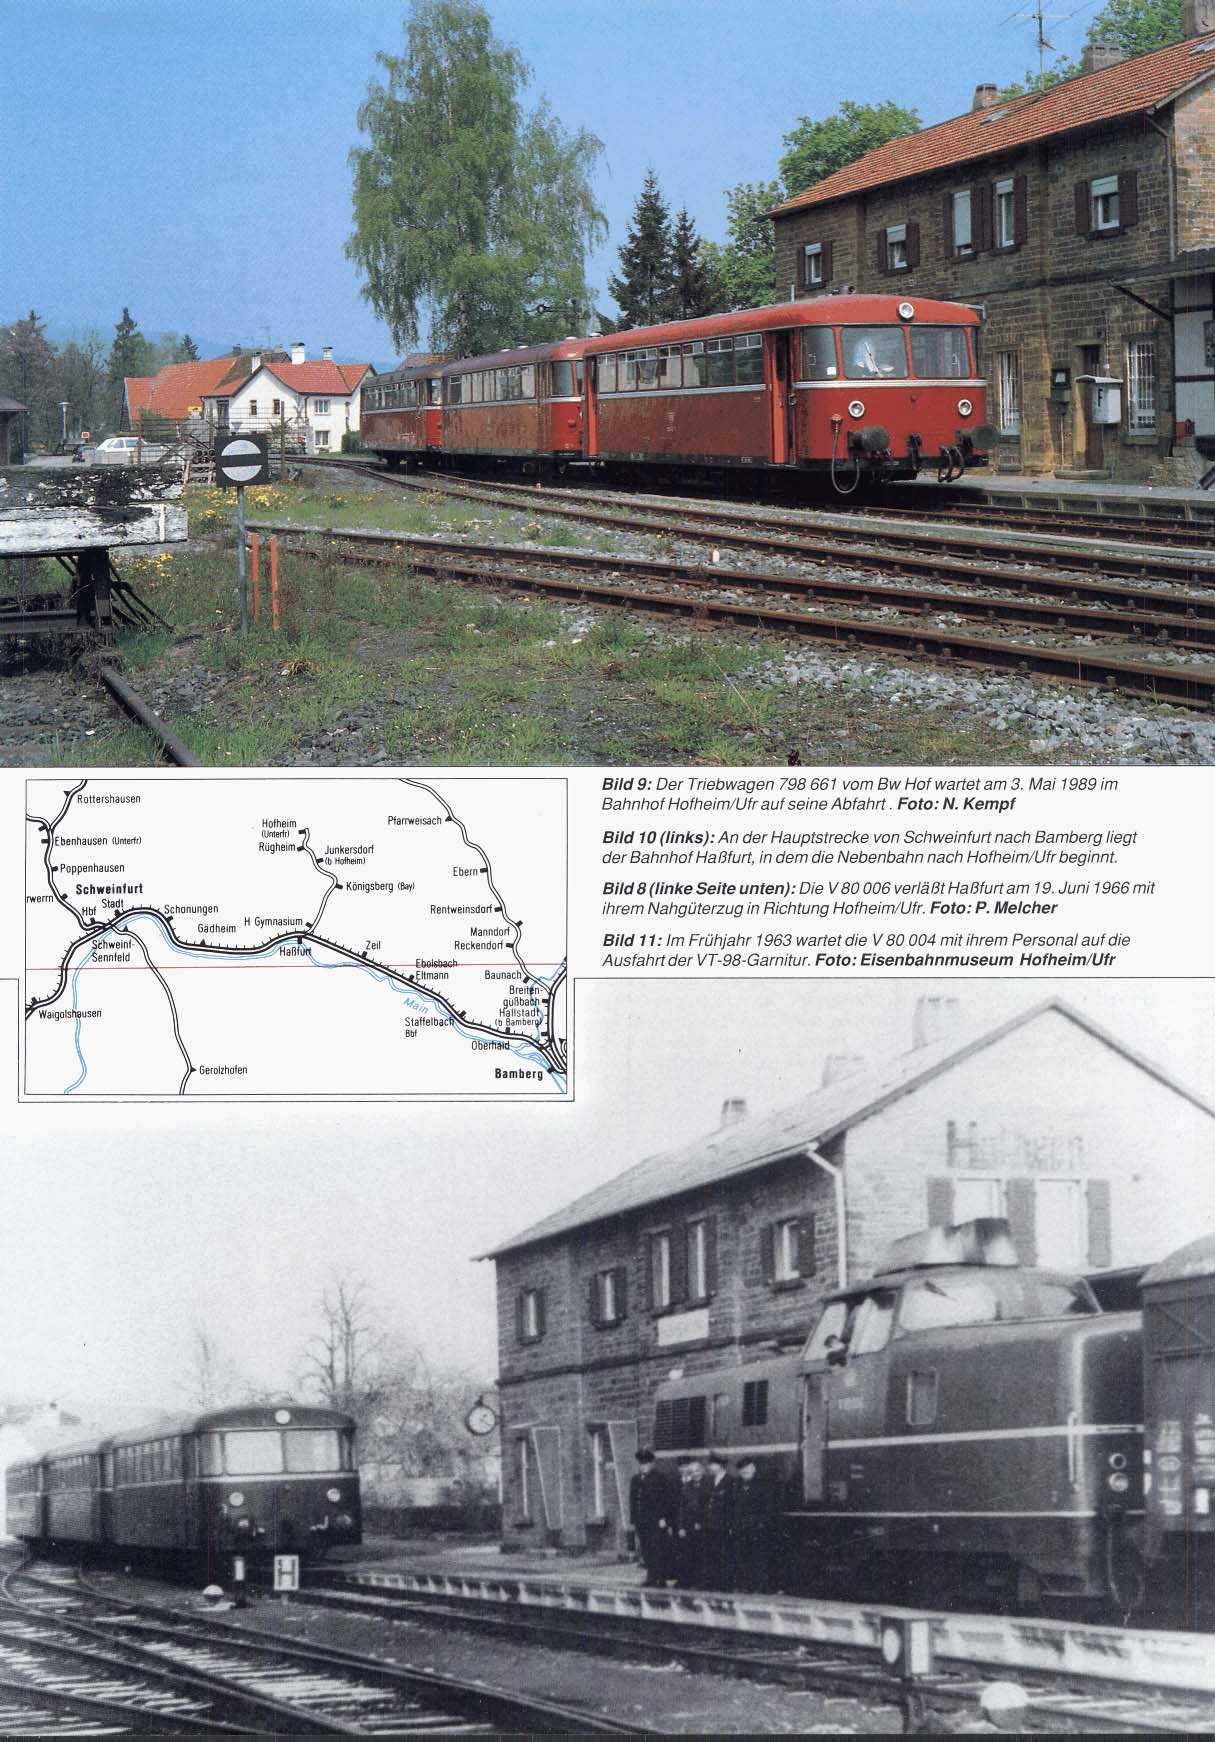 Bild 9: Der Triebwagen 798 661 vom Bw Hof wartet am 3.Mai 1989 im Bahnhof HofheimilJfr auf seine Abfahrt. Foto: N.